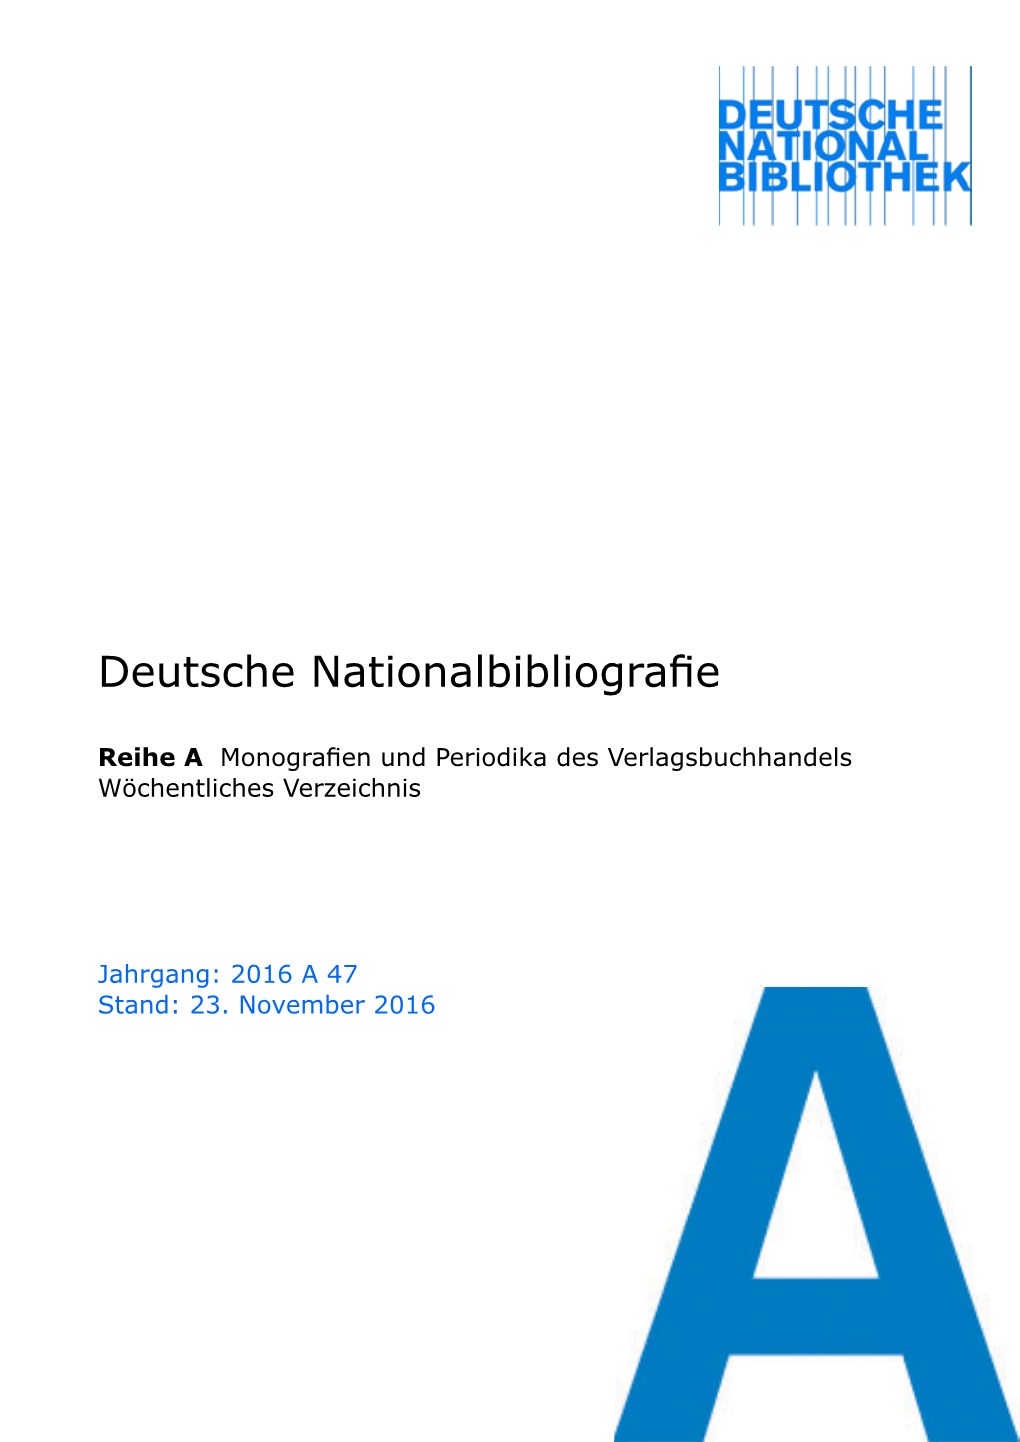 Deutsche Nationalbibliografie 2016 a 47